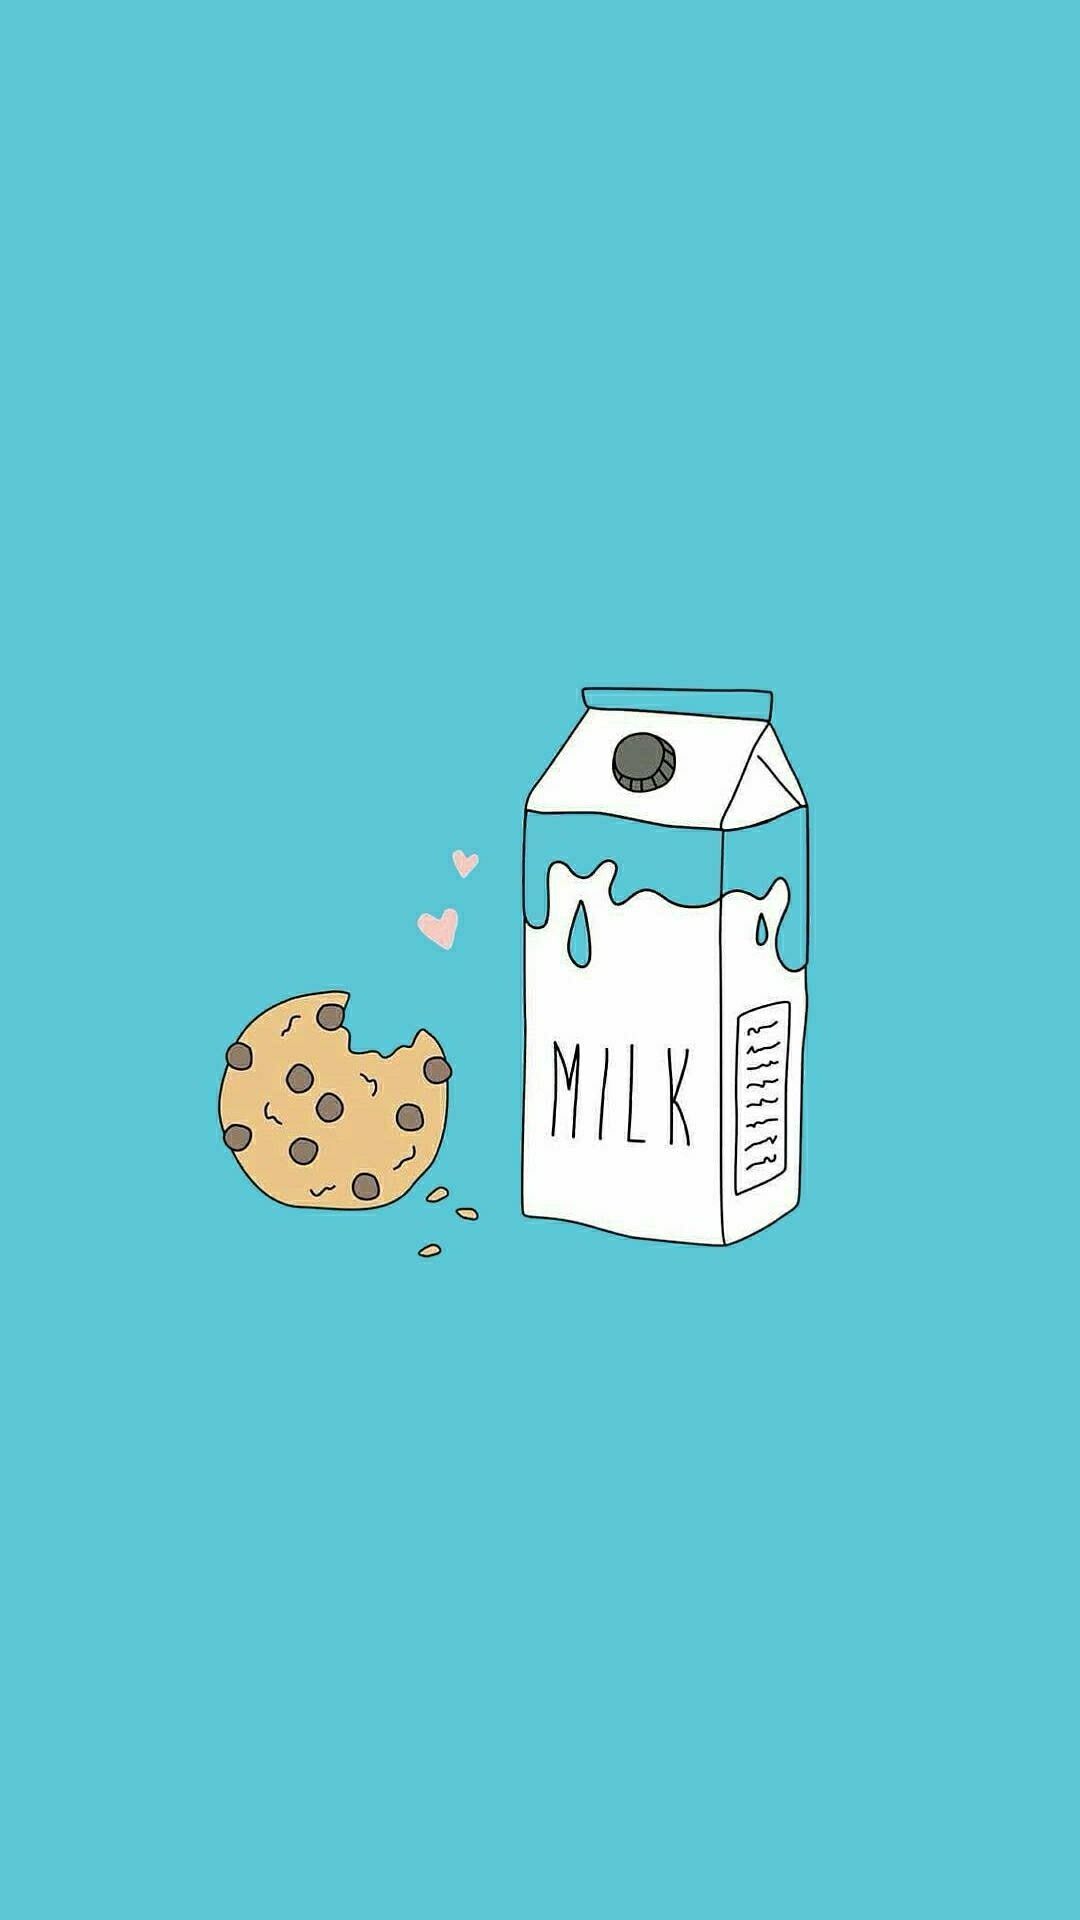 Milk and cookies on a blue background - Food, foodie, milk